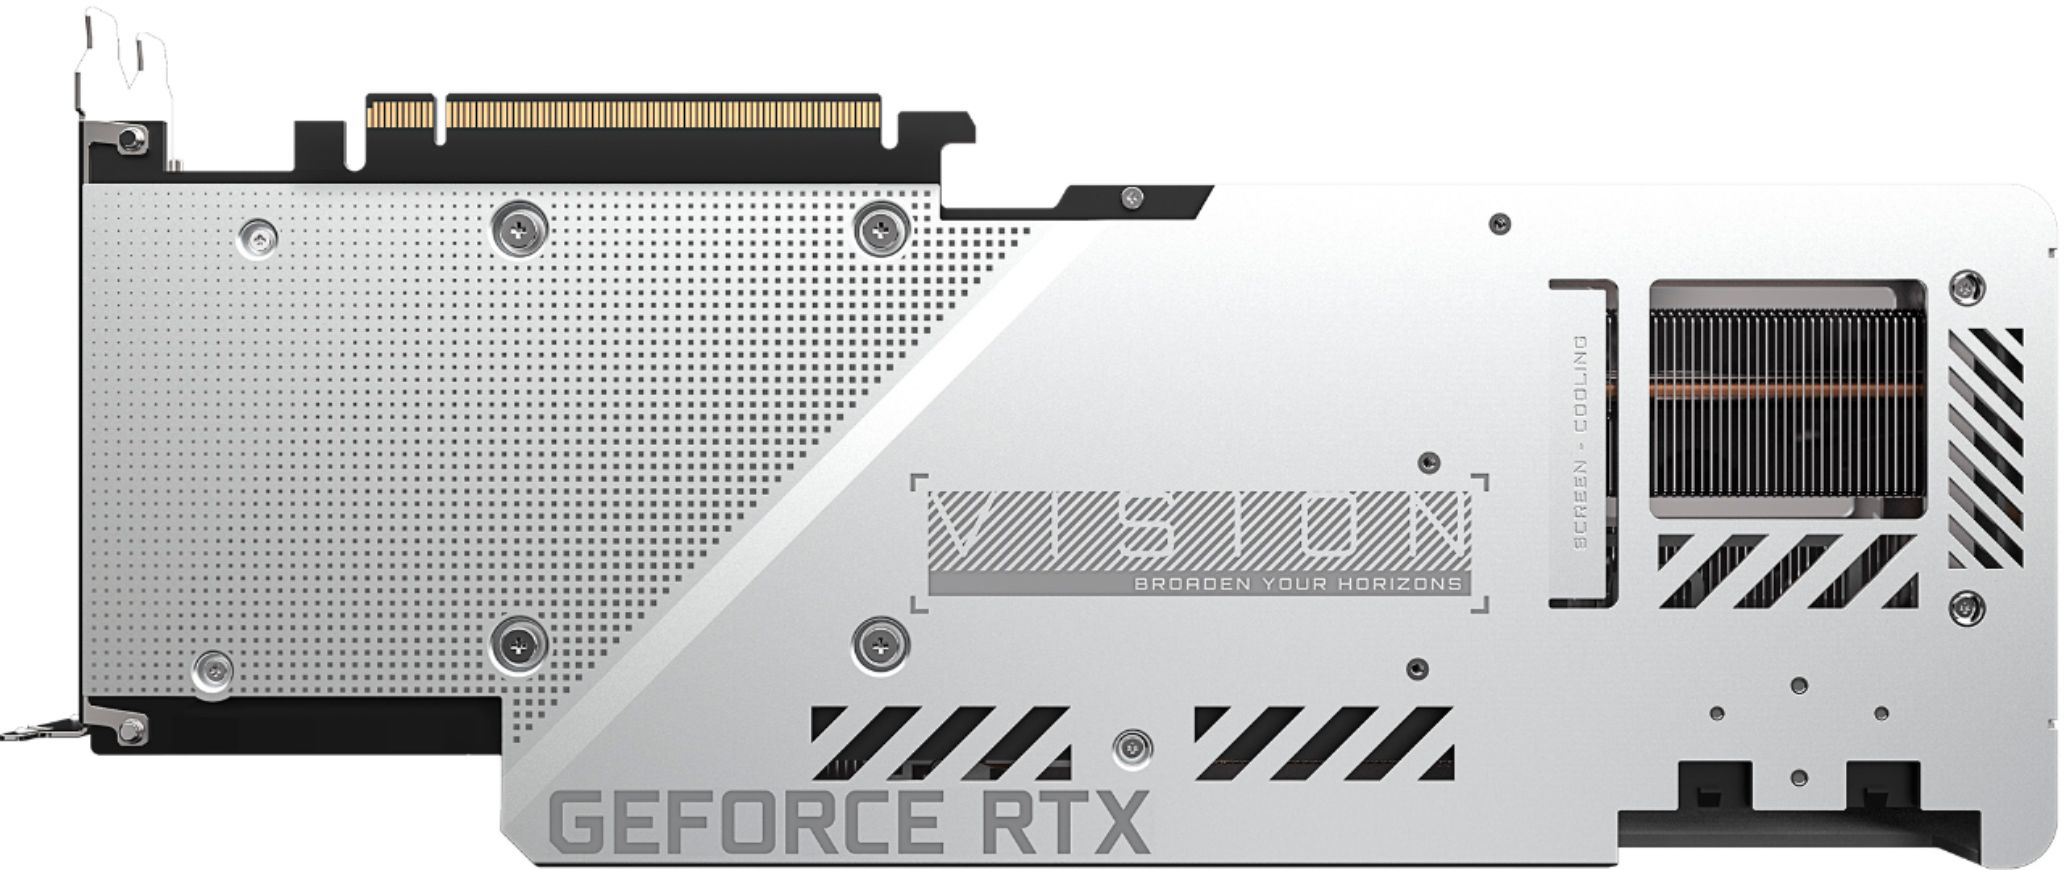 Best Buy: GIGABYTE NVIDIA GeForce RTX 3080 VISION OC 10GB GDDR6X ...